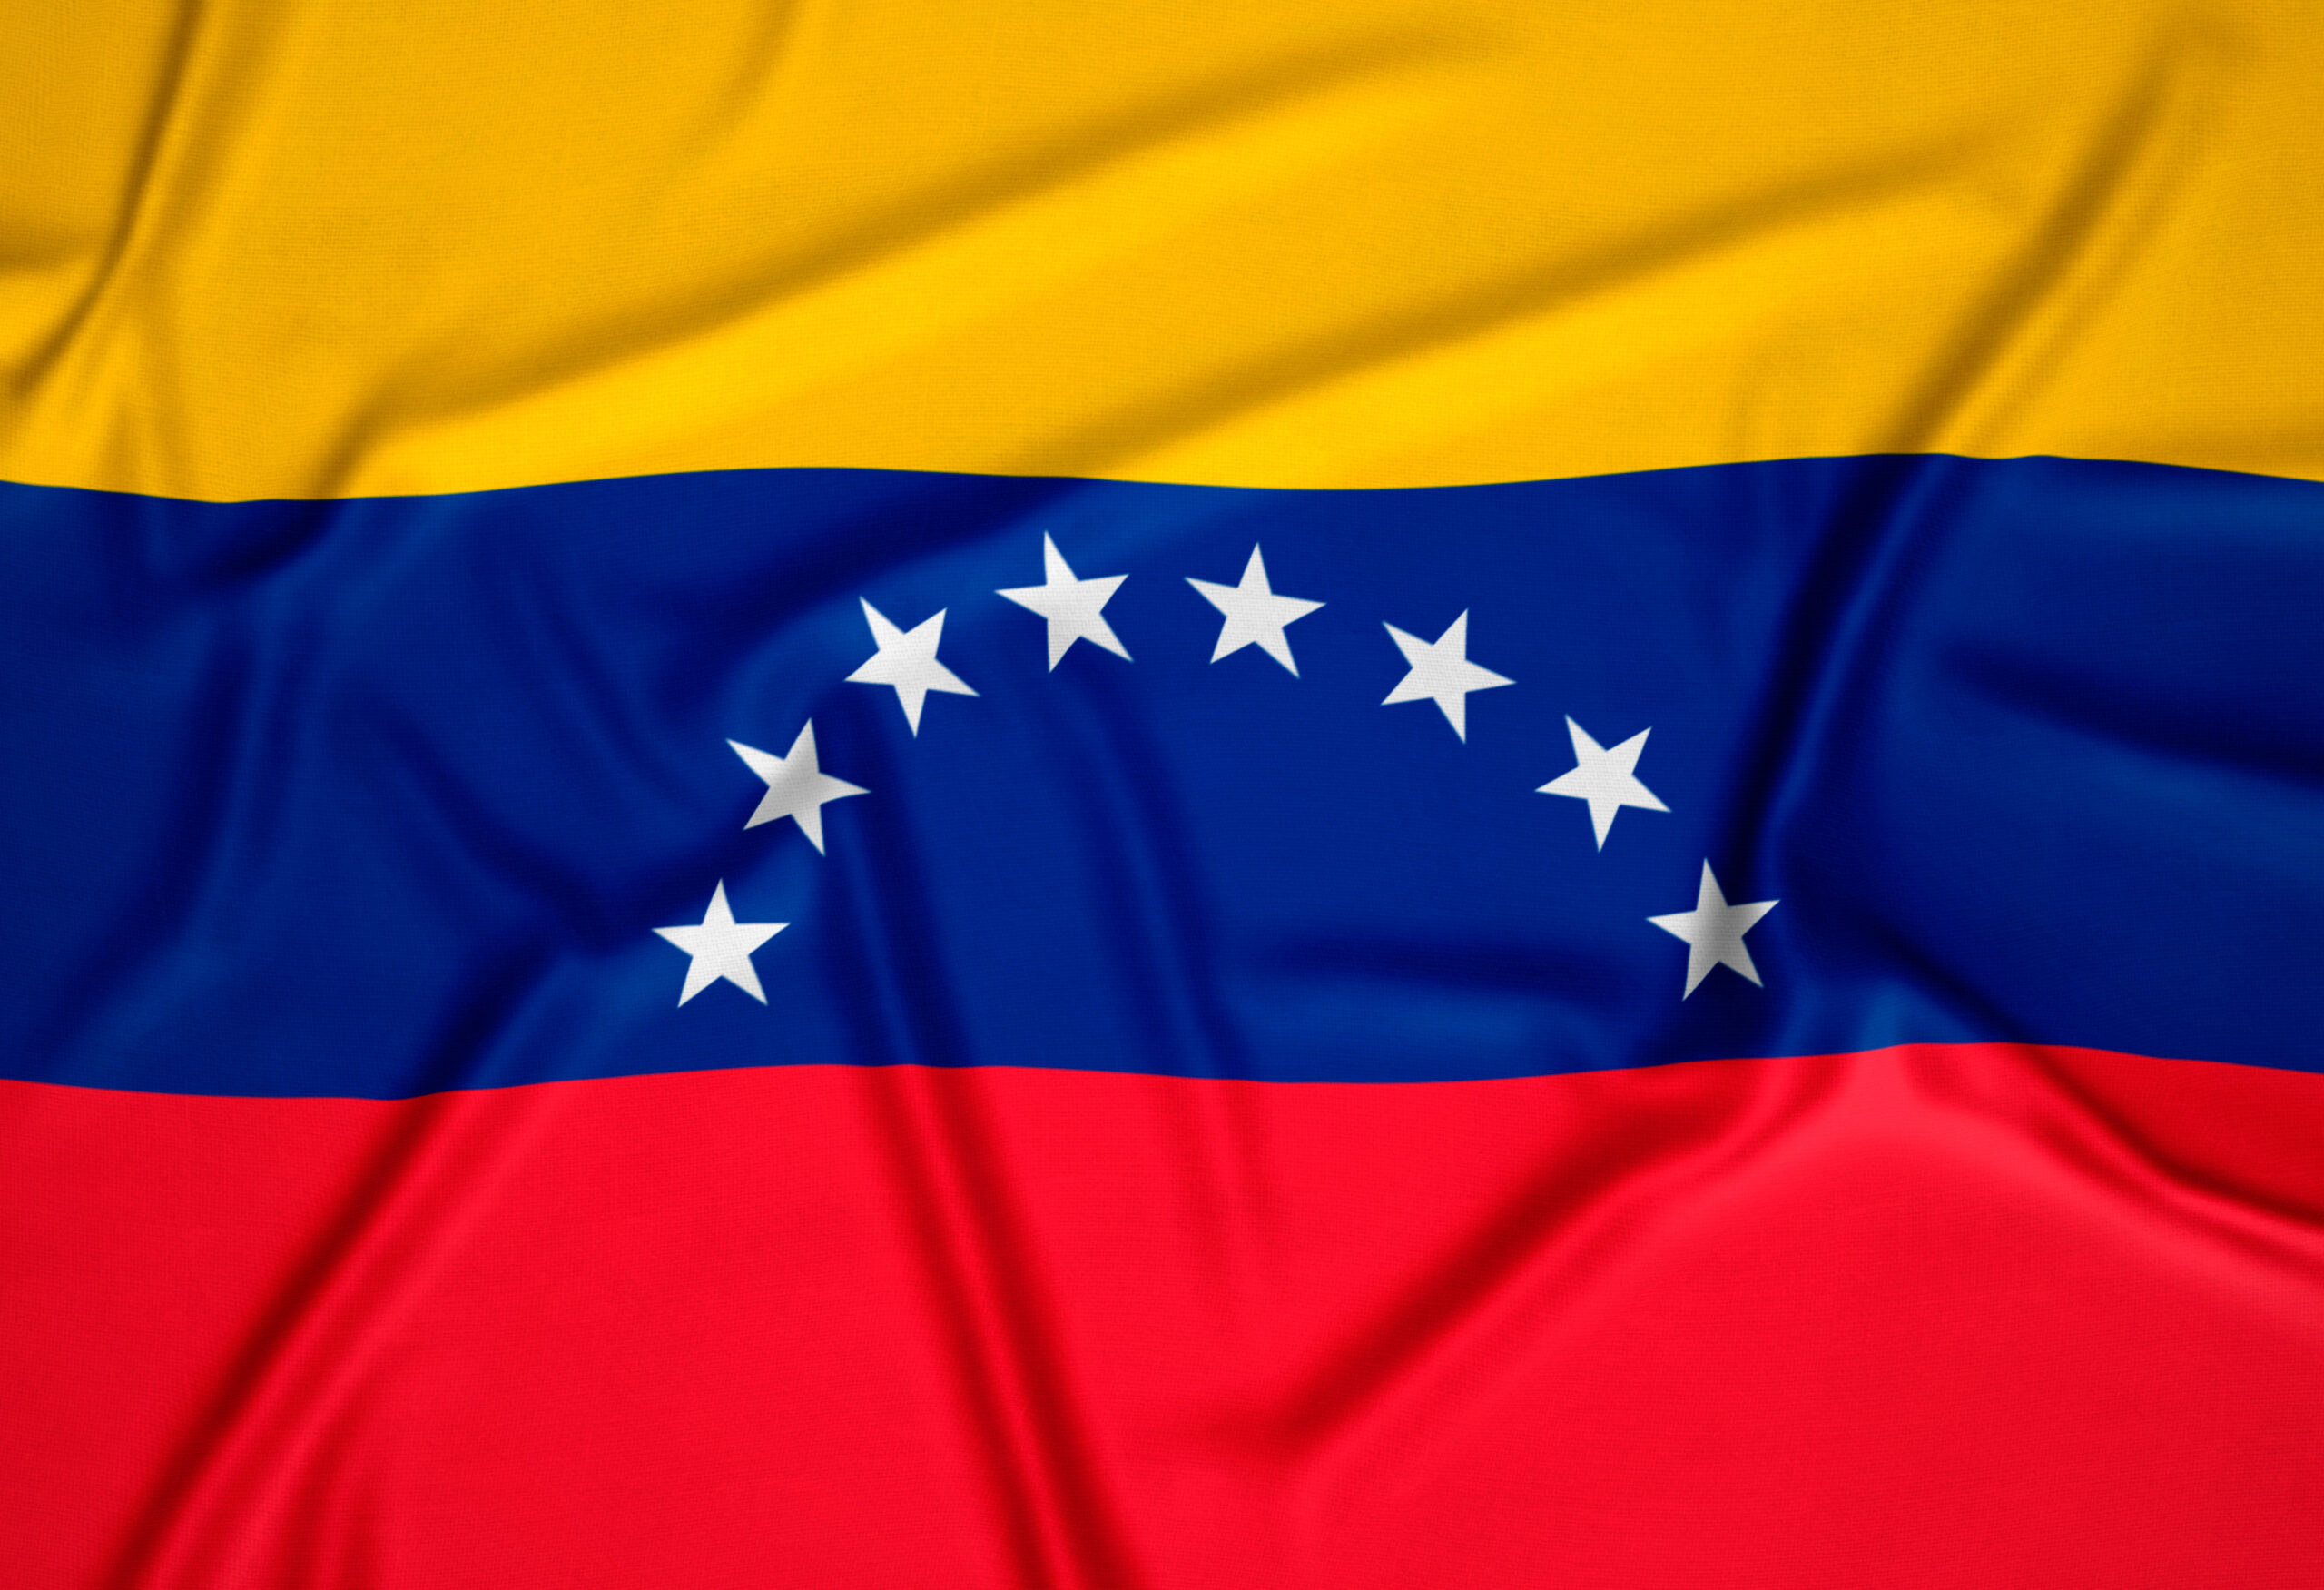 Solicitar nacionalidad española siendo venezolano